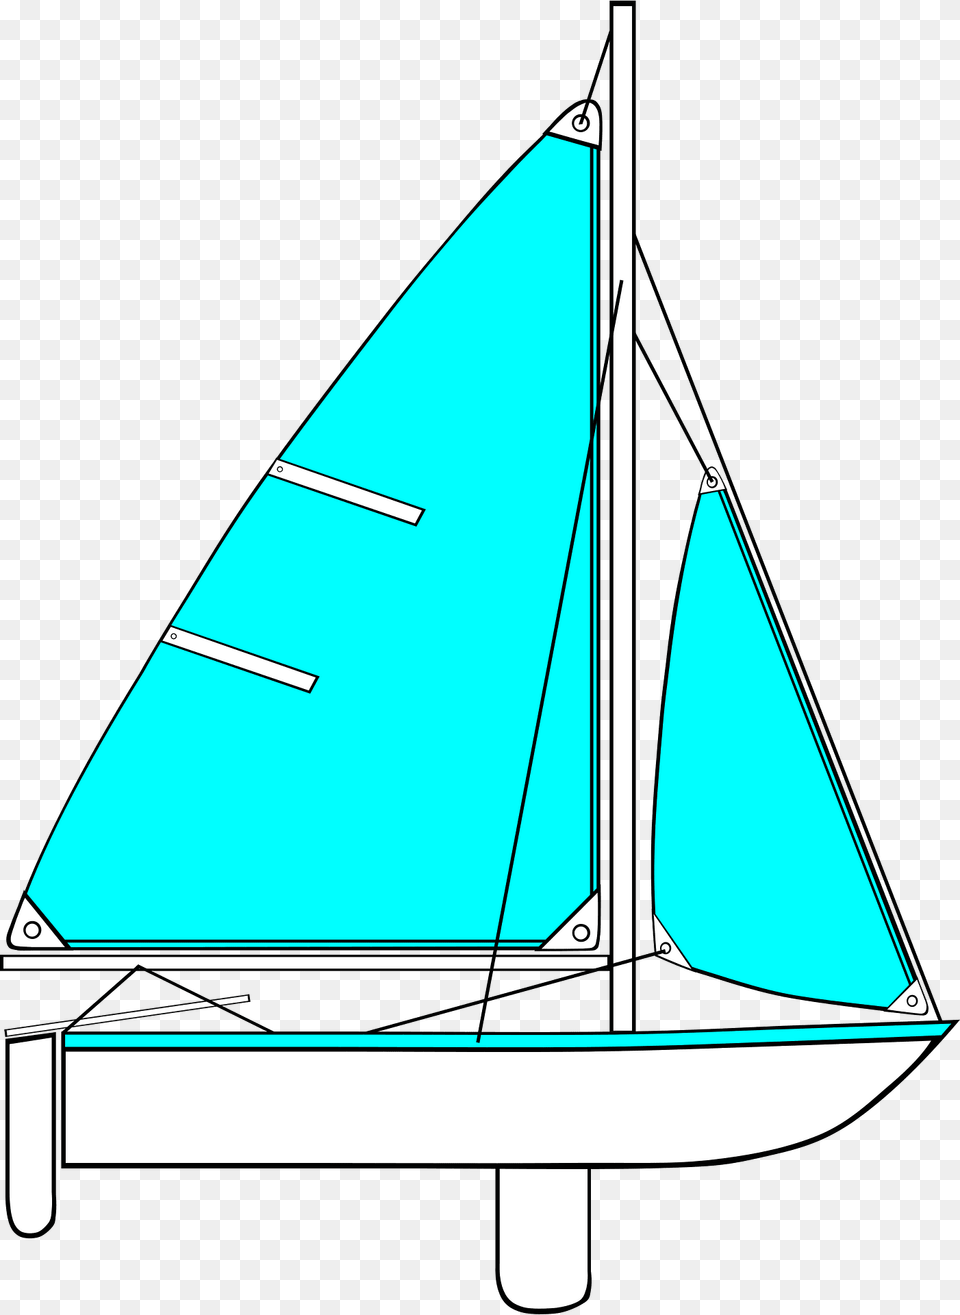 Sailing Clipart, Boat, Sailboat, Transportation, Vehicle Png Image